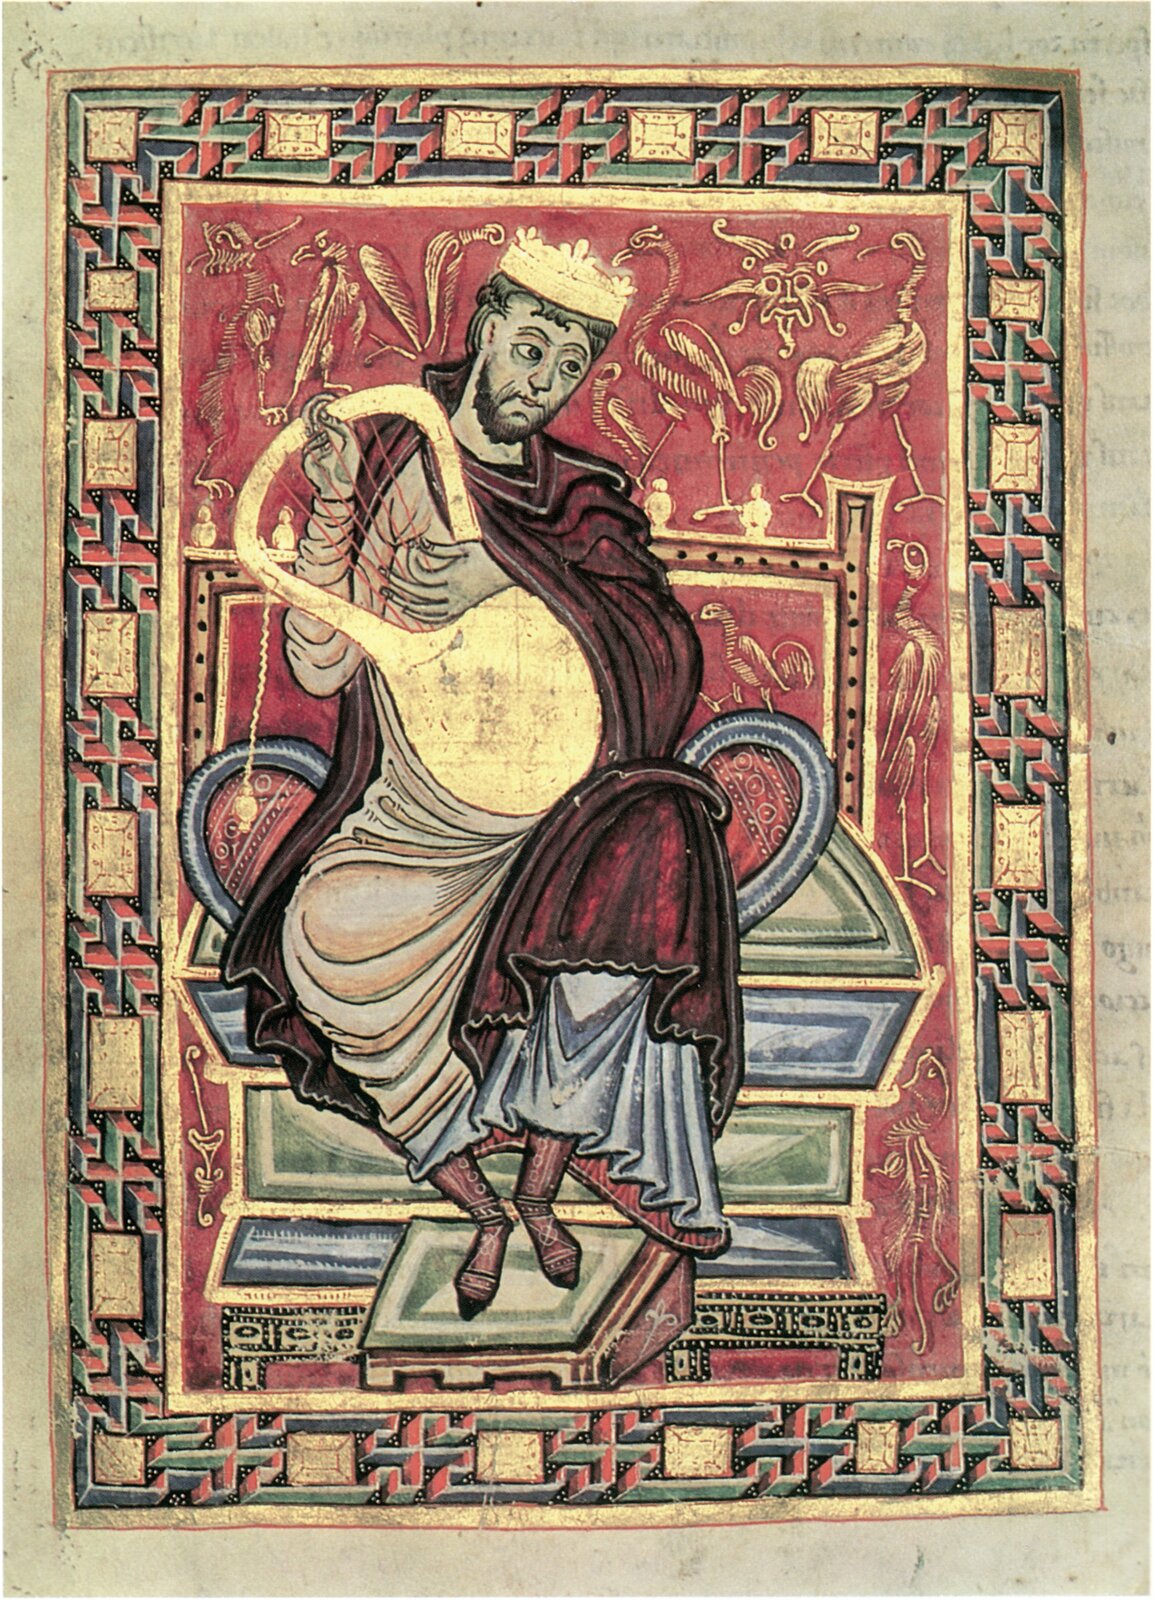 Ilustracja przedstawia średniowieczny rysunek. Widnieje na nim postać siedzącego na tronie króla w koronie. Król gra na małej harfie.